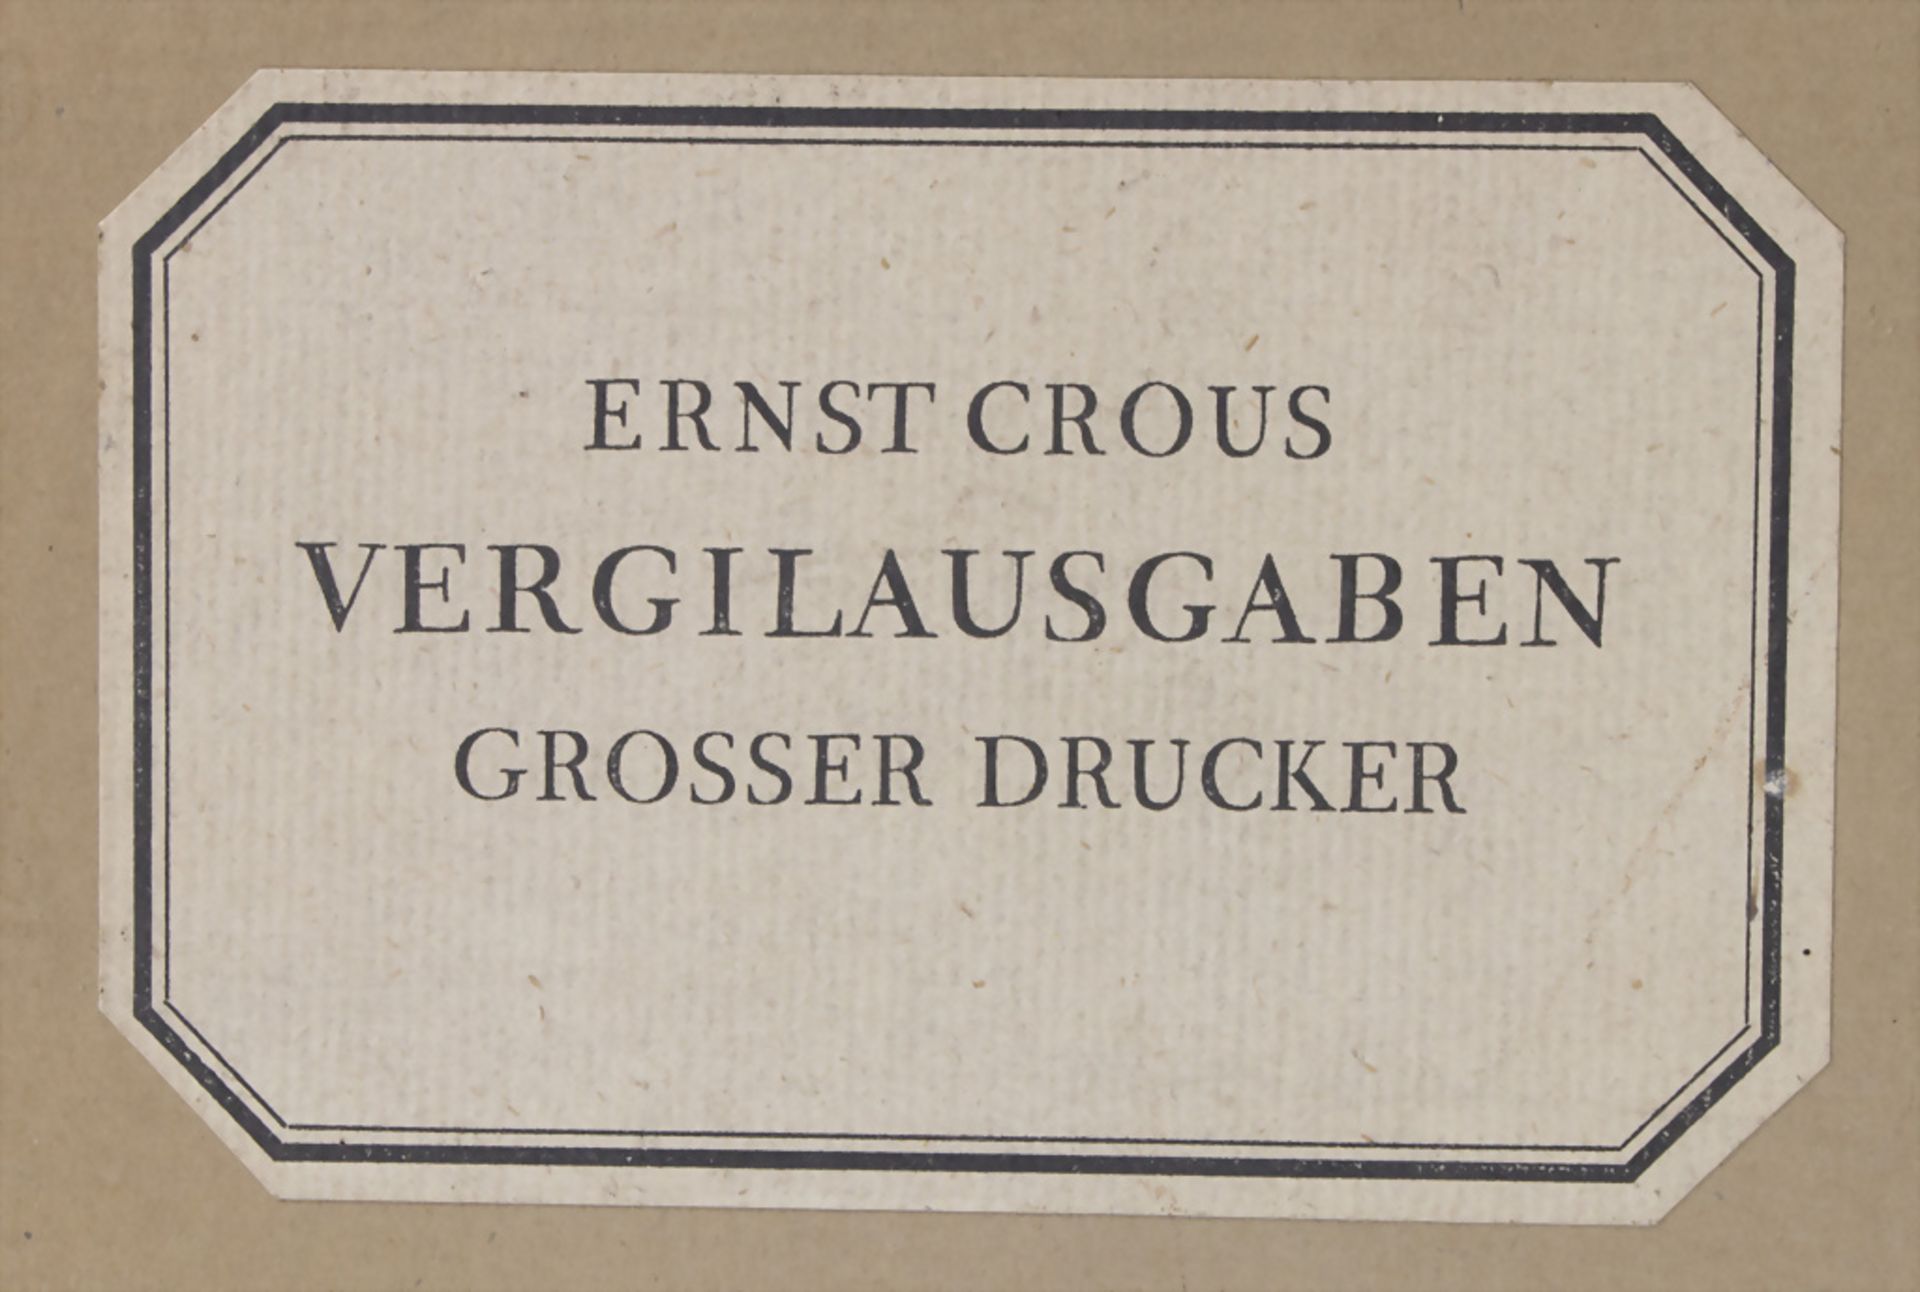 Ernst Crous: 'Vergil. Ausgaben großer Drucker', Berlin, 1930